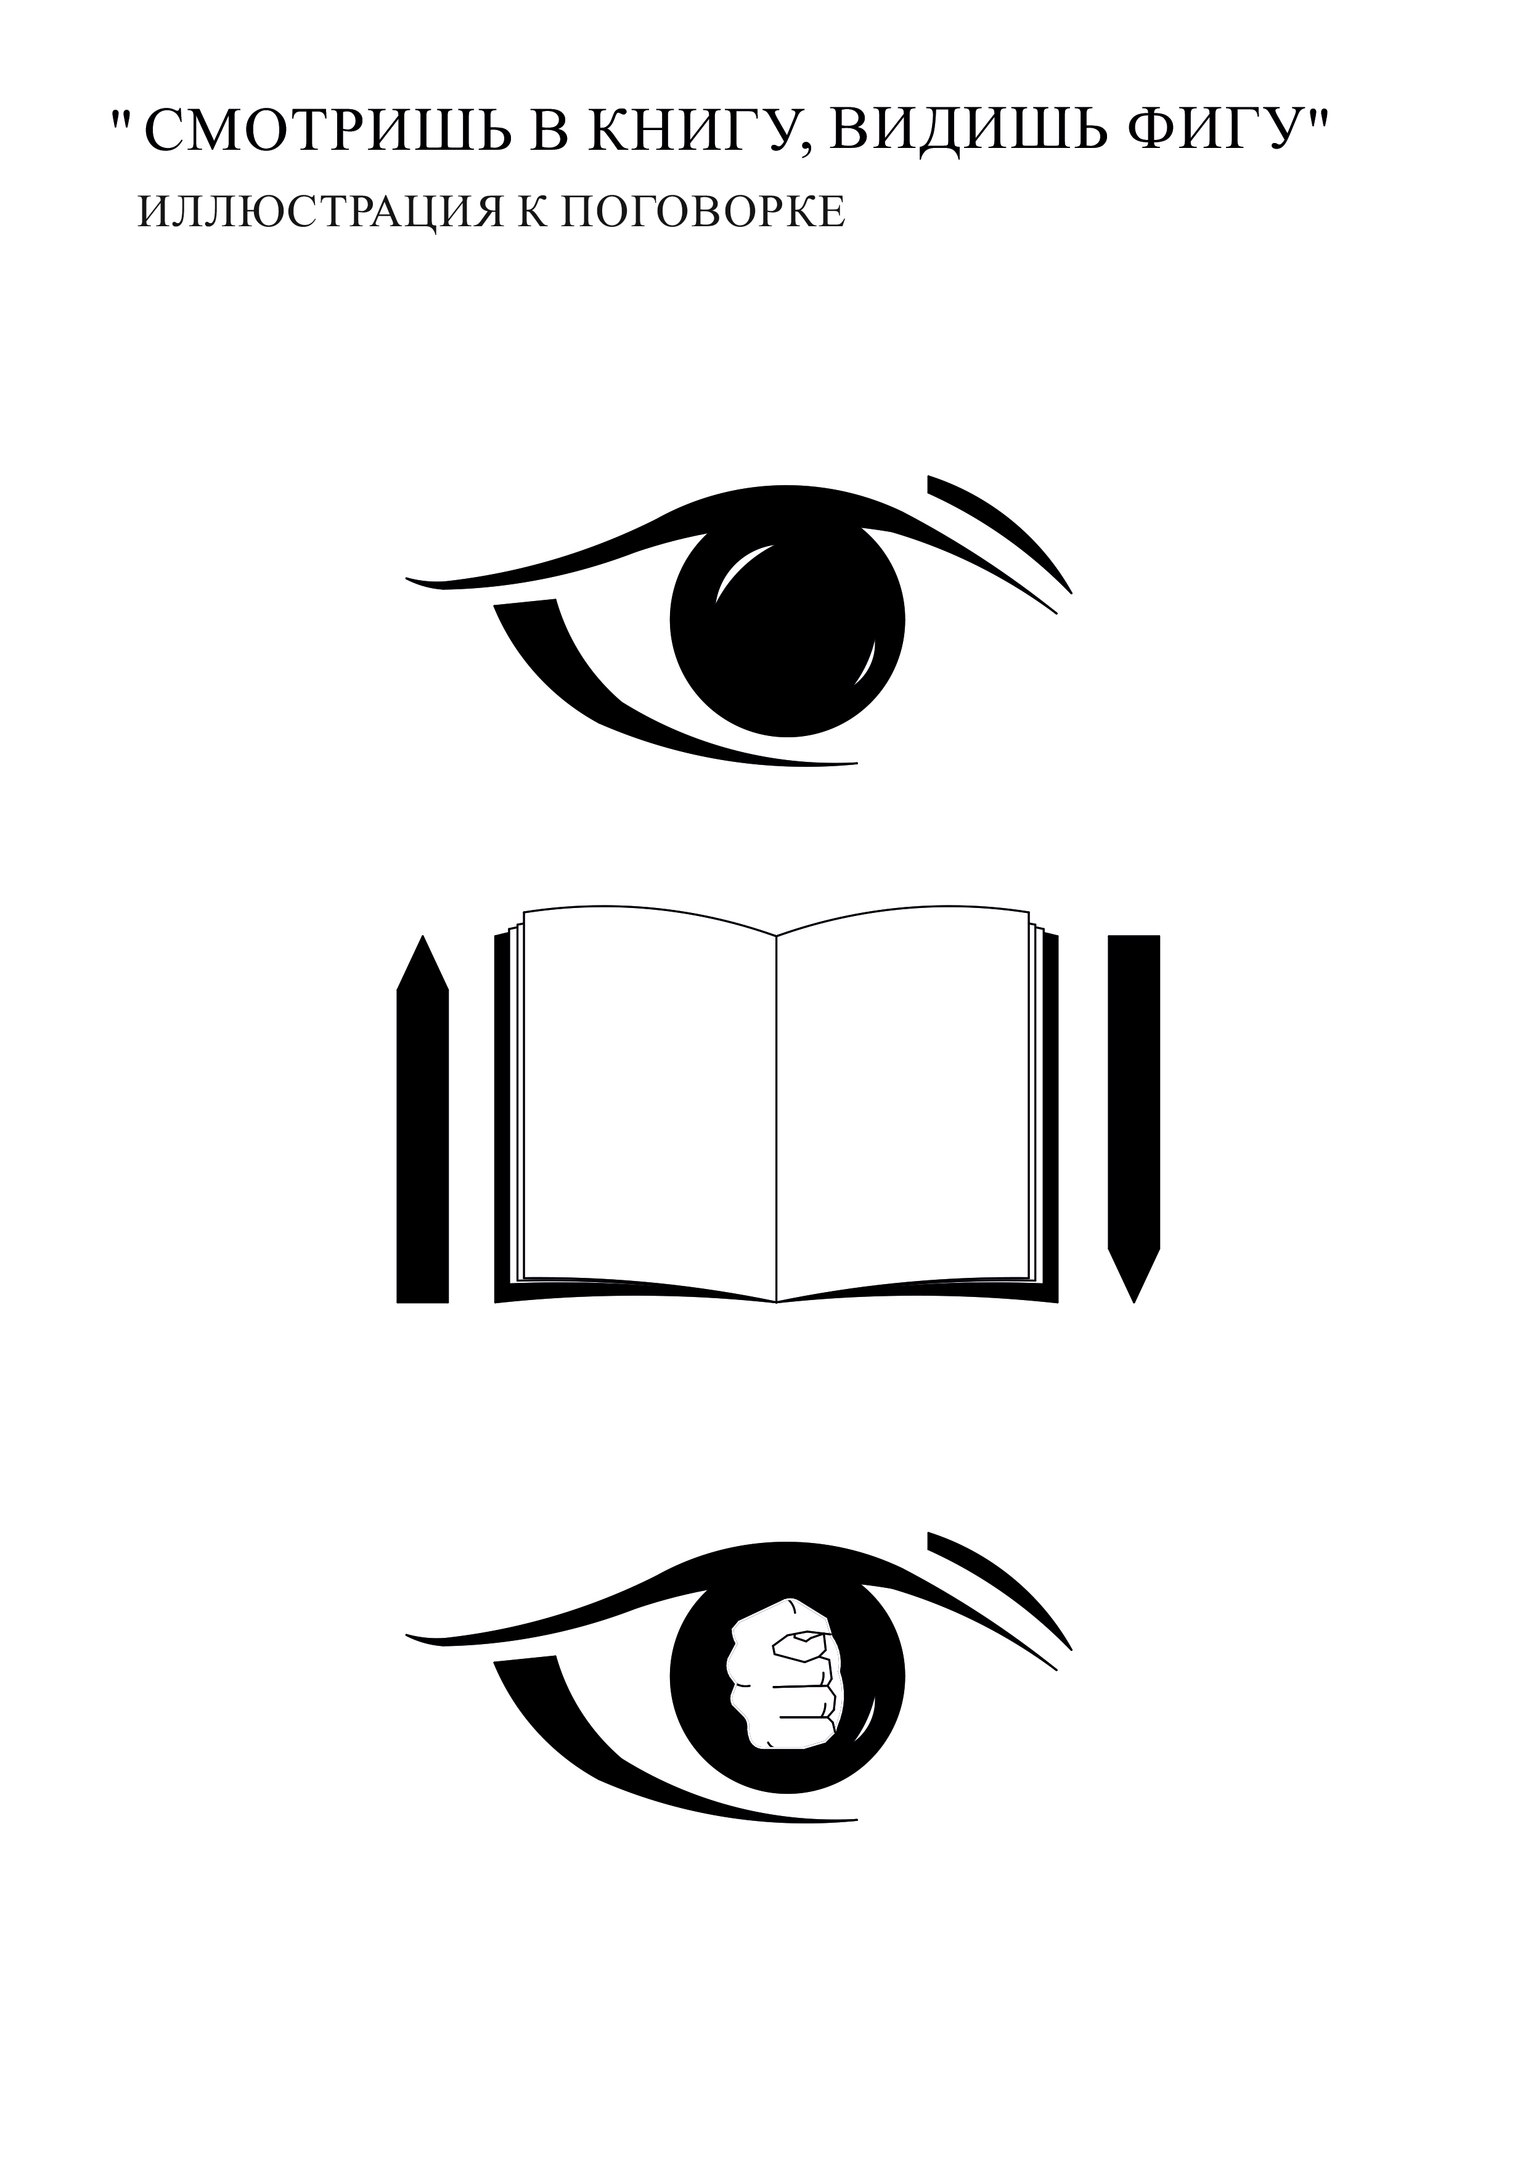 Книгу вижу фигу. Смотрю в книгу вижу фигу. Смотрю в книгу вижу книгу. Смотришь в книгу видишь ы ГУ. Смотрим в книгу видим фигу.